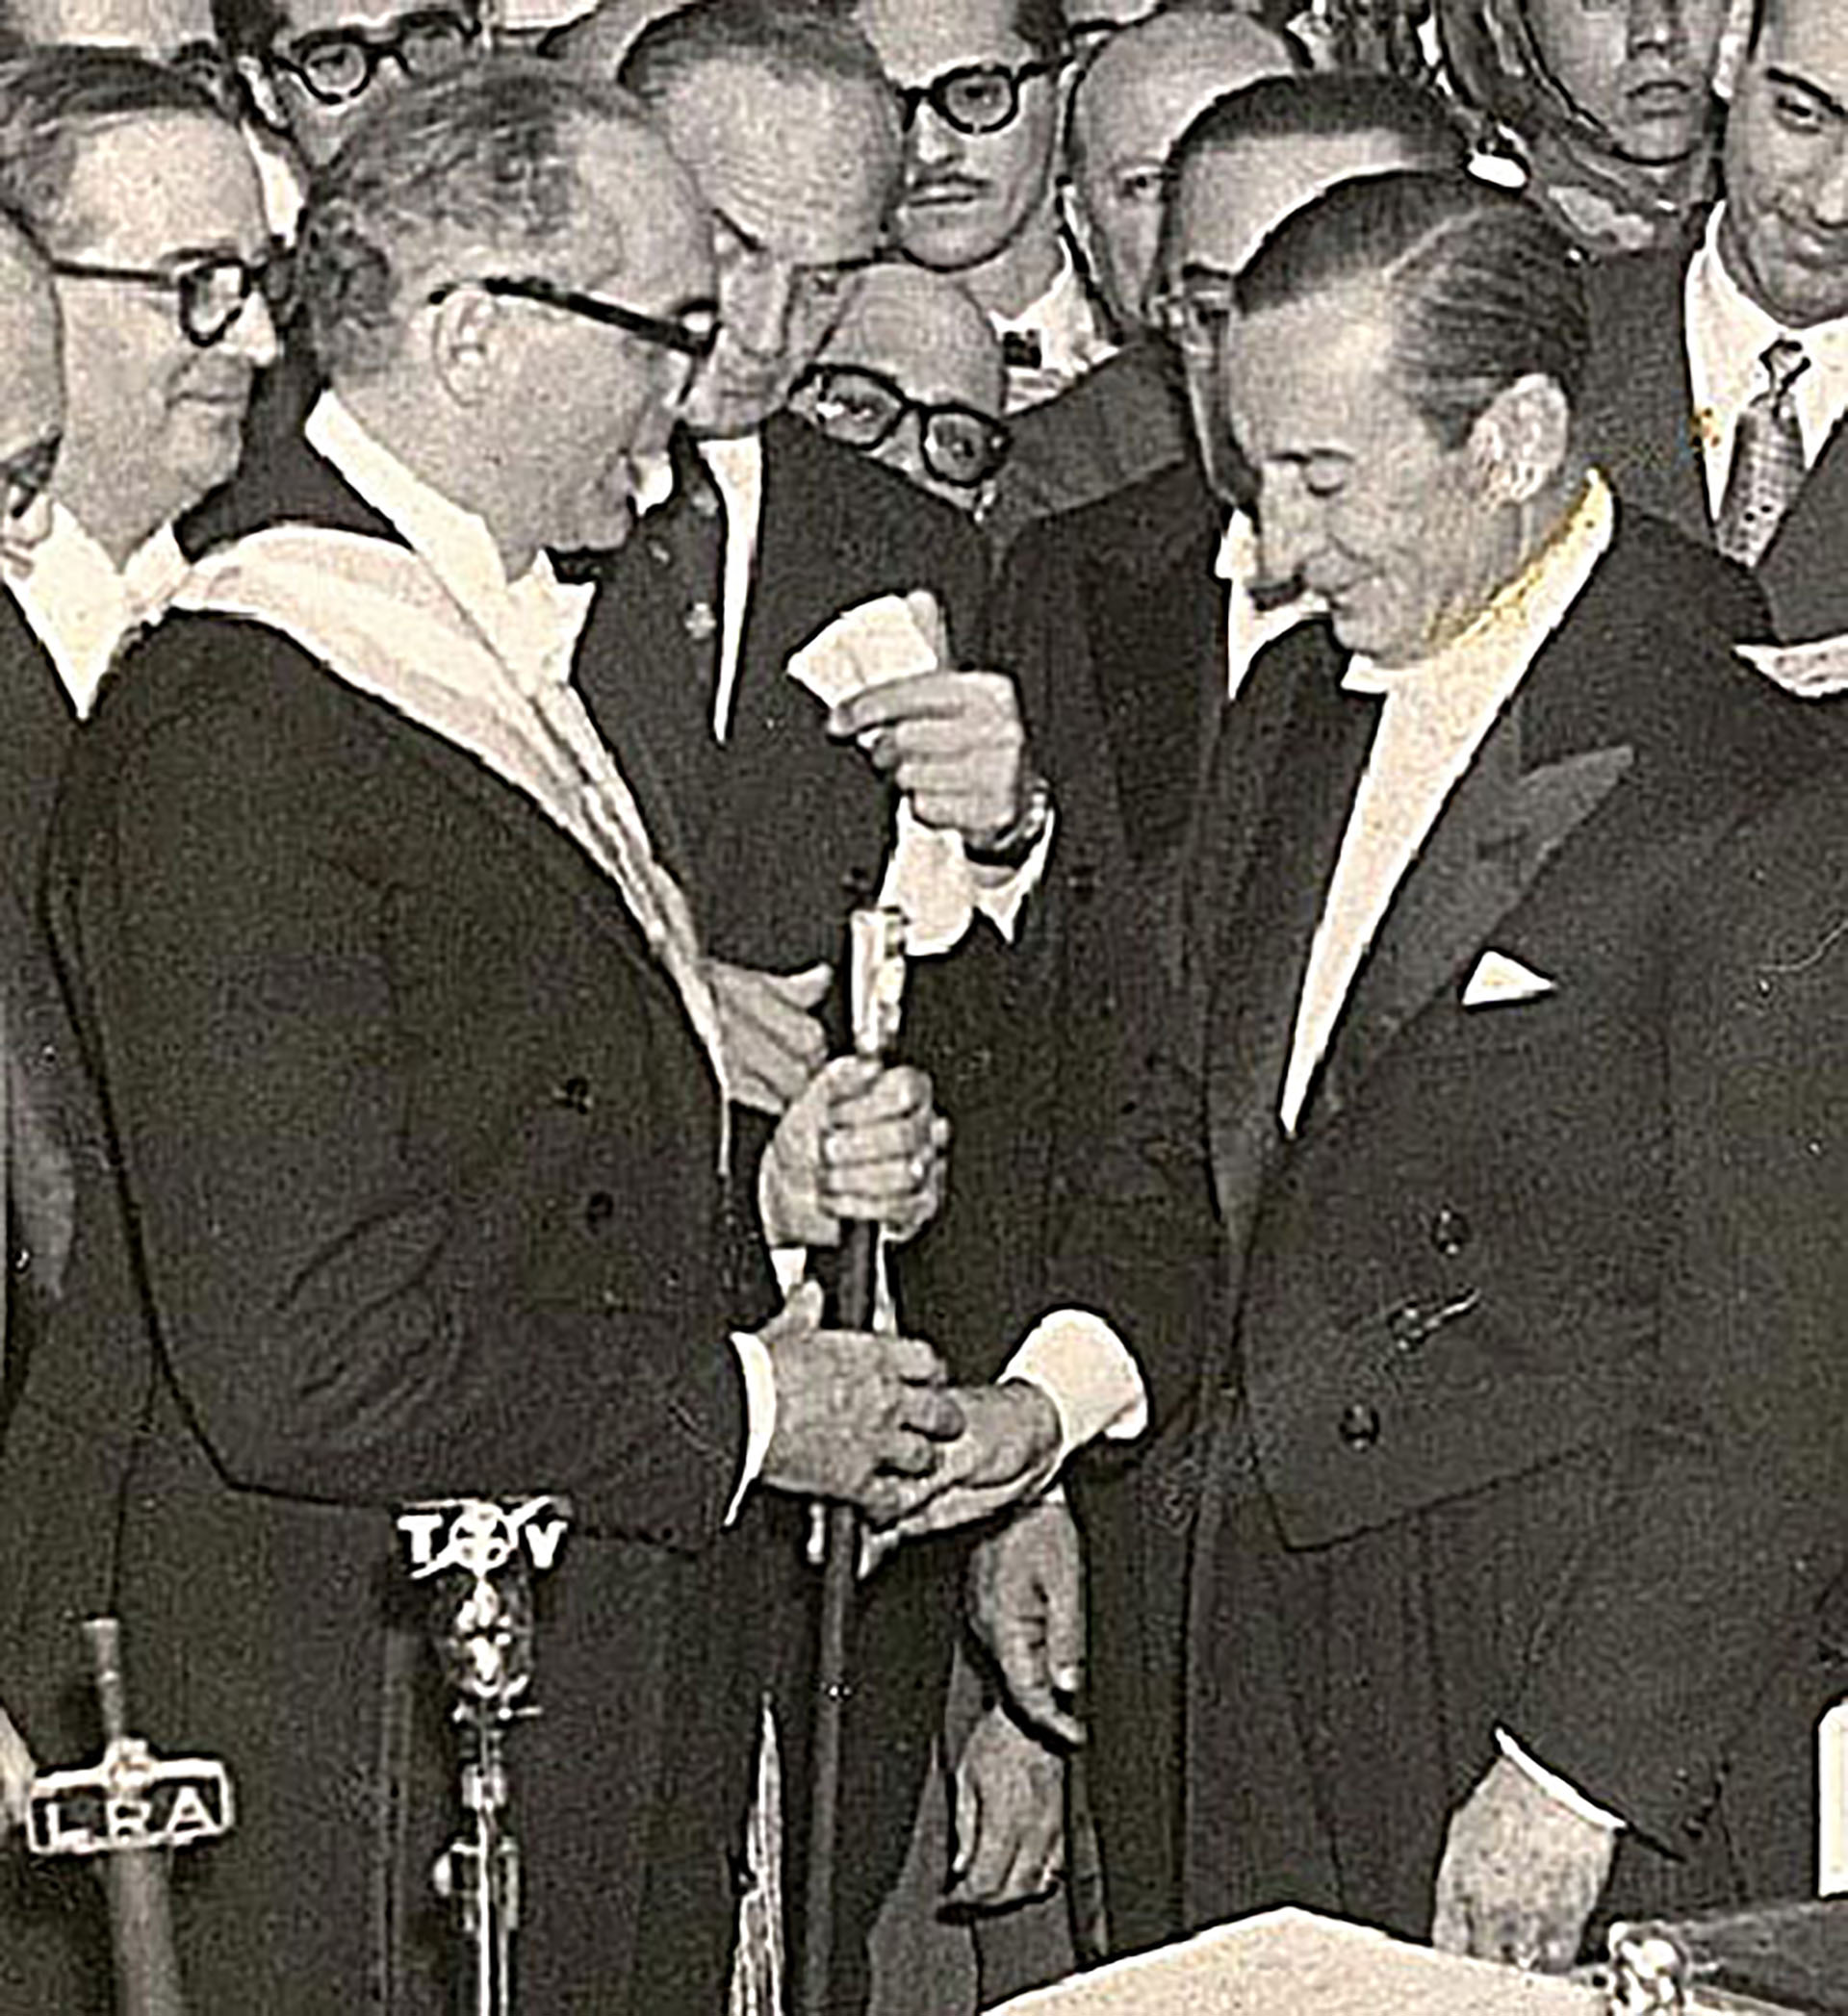 Mayo de 1958: Arturo Frondizi recibe el bastón presidencial de manos de Eugenio Aramburu, uno de los líderes de la "Revolución Libertadora" que había derrocado a Perón en 1955. En su primer año en el gobierno, Frondizi alcanzaría la "brecha cambiaria" más alta de la historia argentina